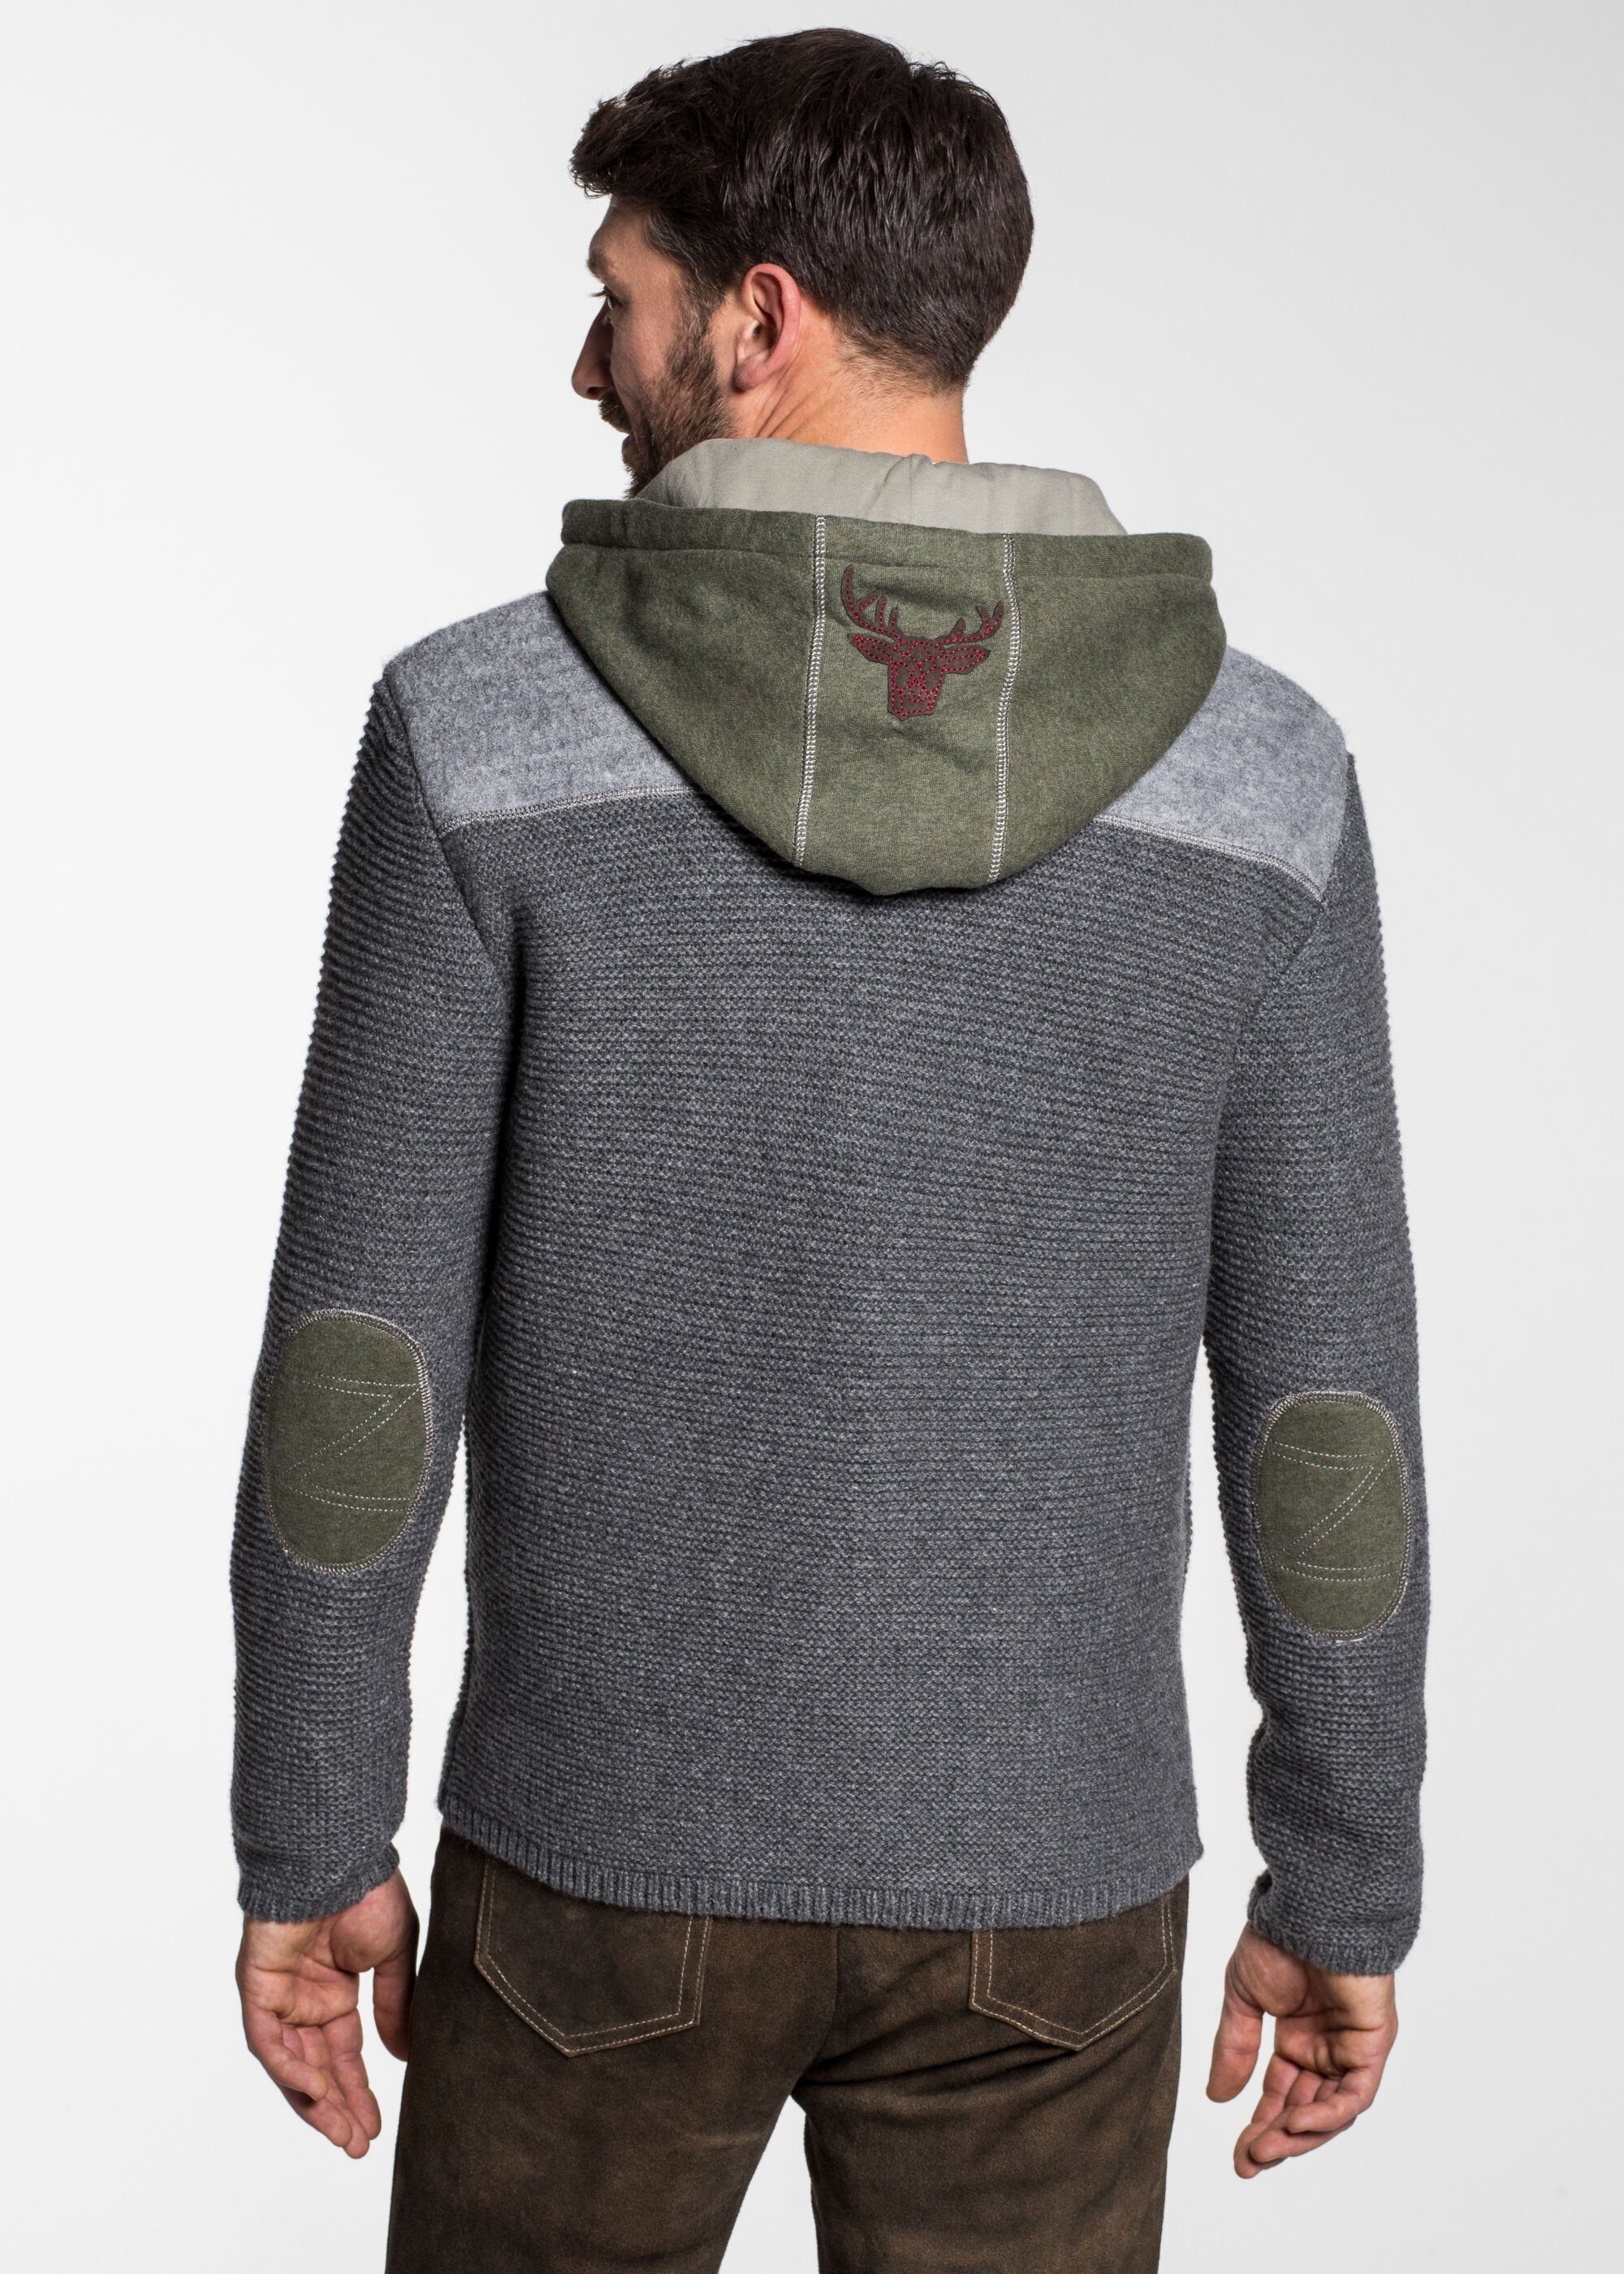 & Dakar Sweater-Kapuze M,grau/moos Wensky Spieth mit cm 70 Trachtenstrickjacke